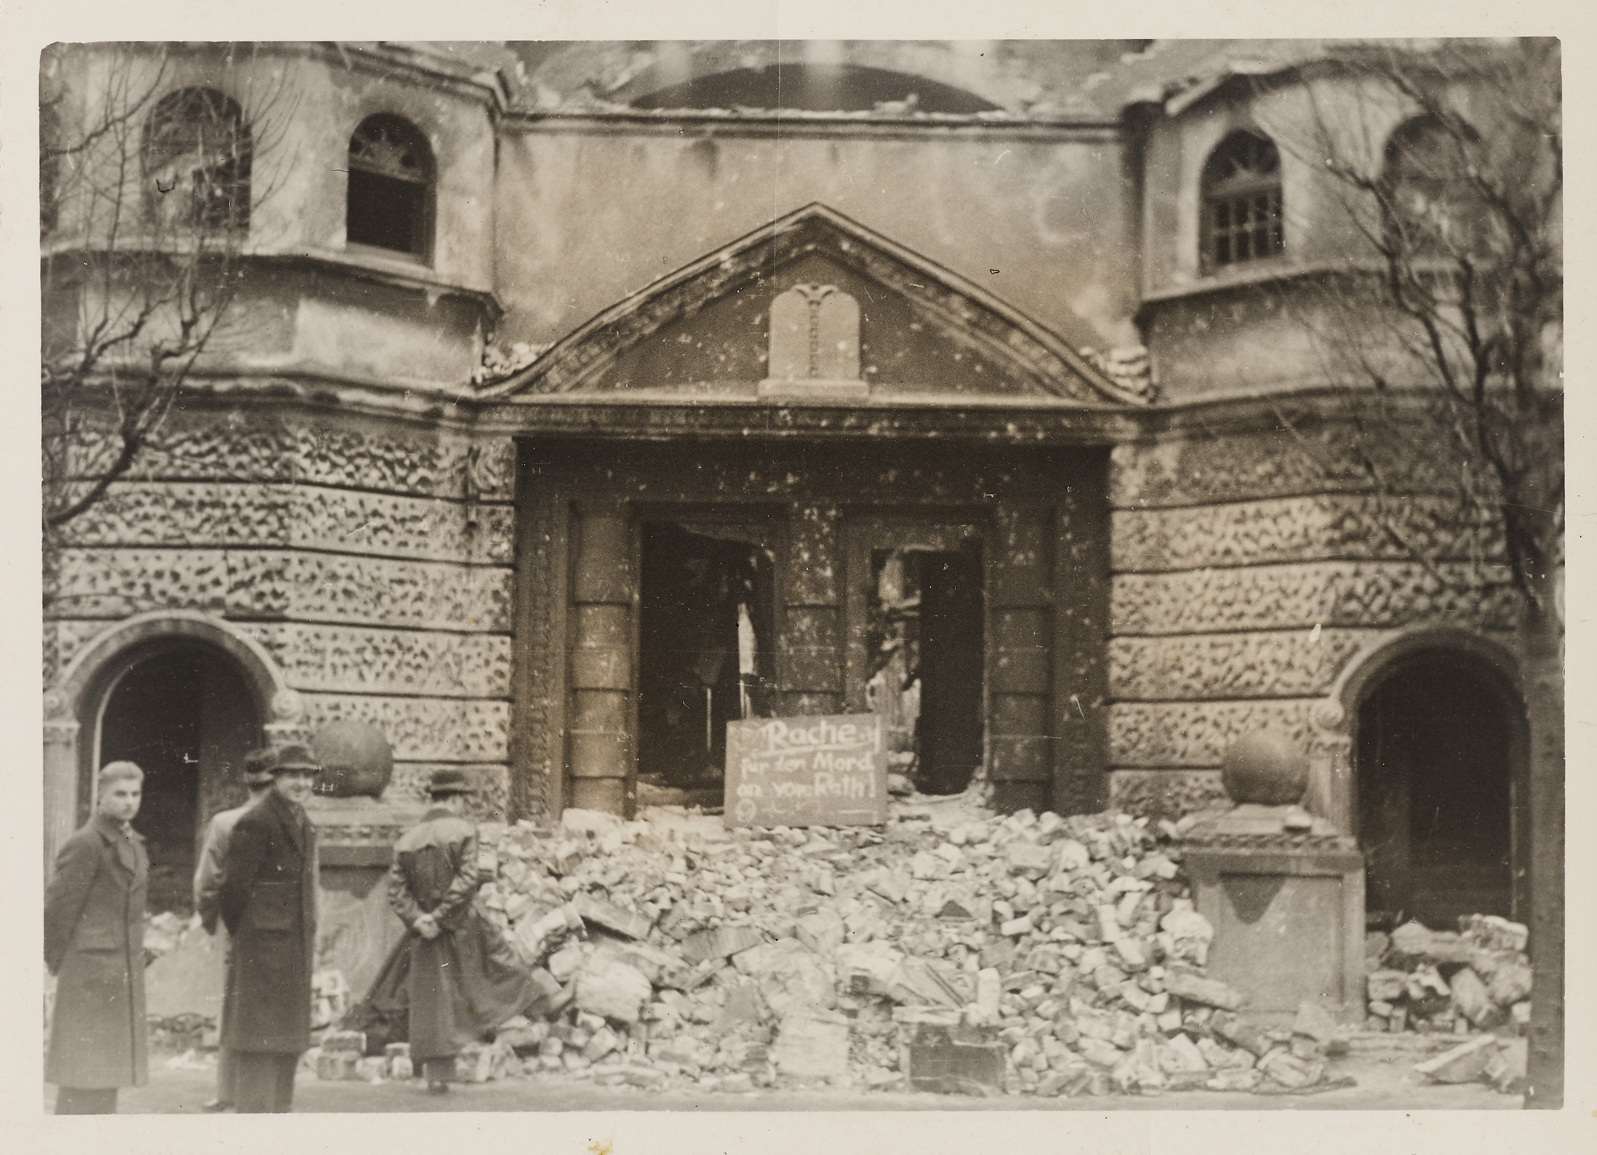 Foto: Synagoge von Wilhelmshaven nach der Pogromnacht, auf den Trümmern vor dem Eingang ein handgeschriebenes Schild: "Rache für den Mord an vom Rath", 1938